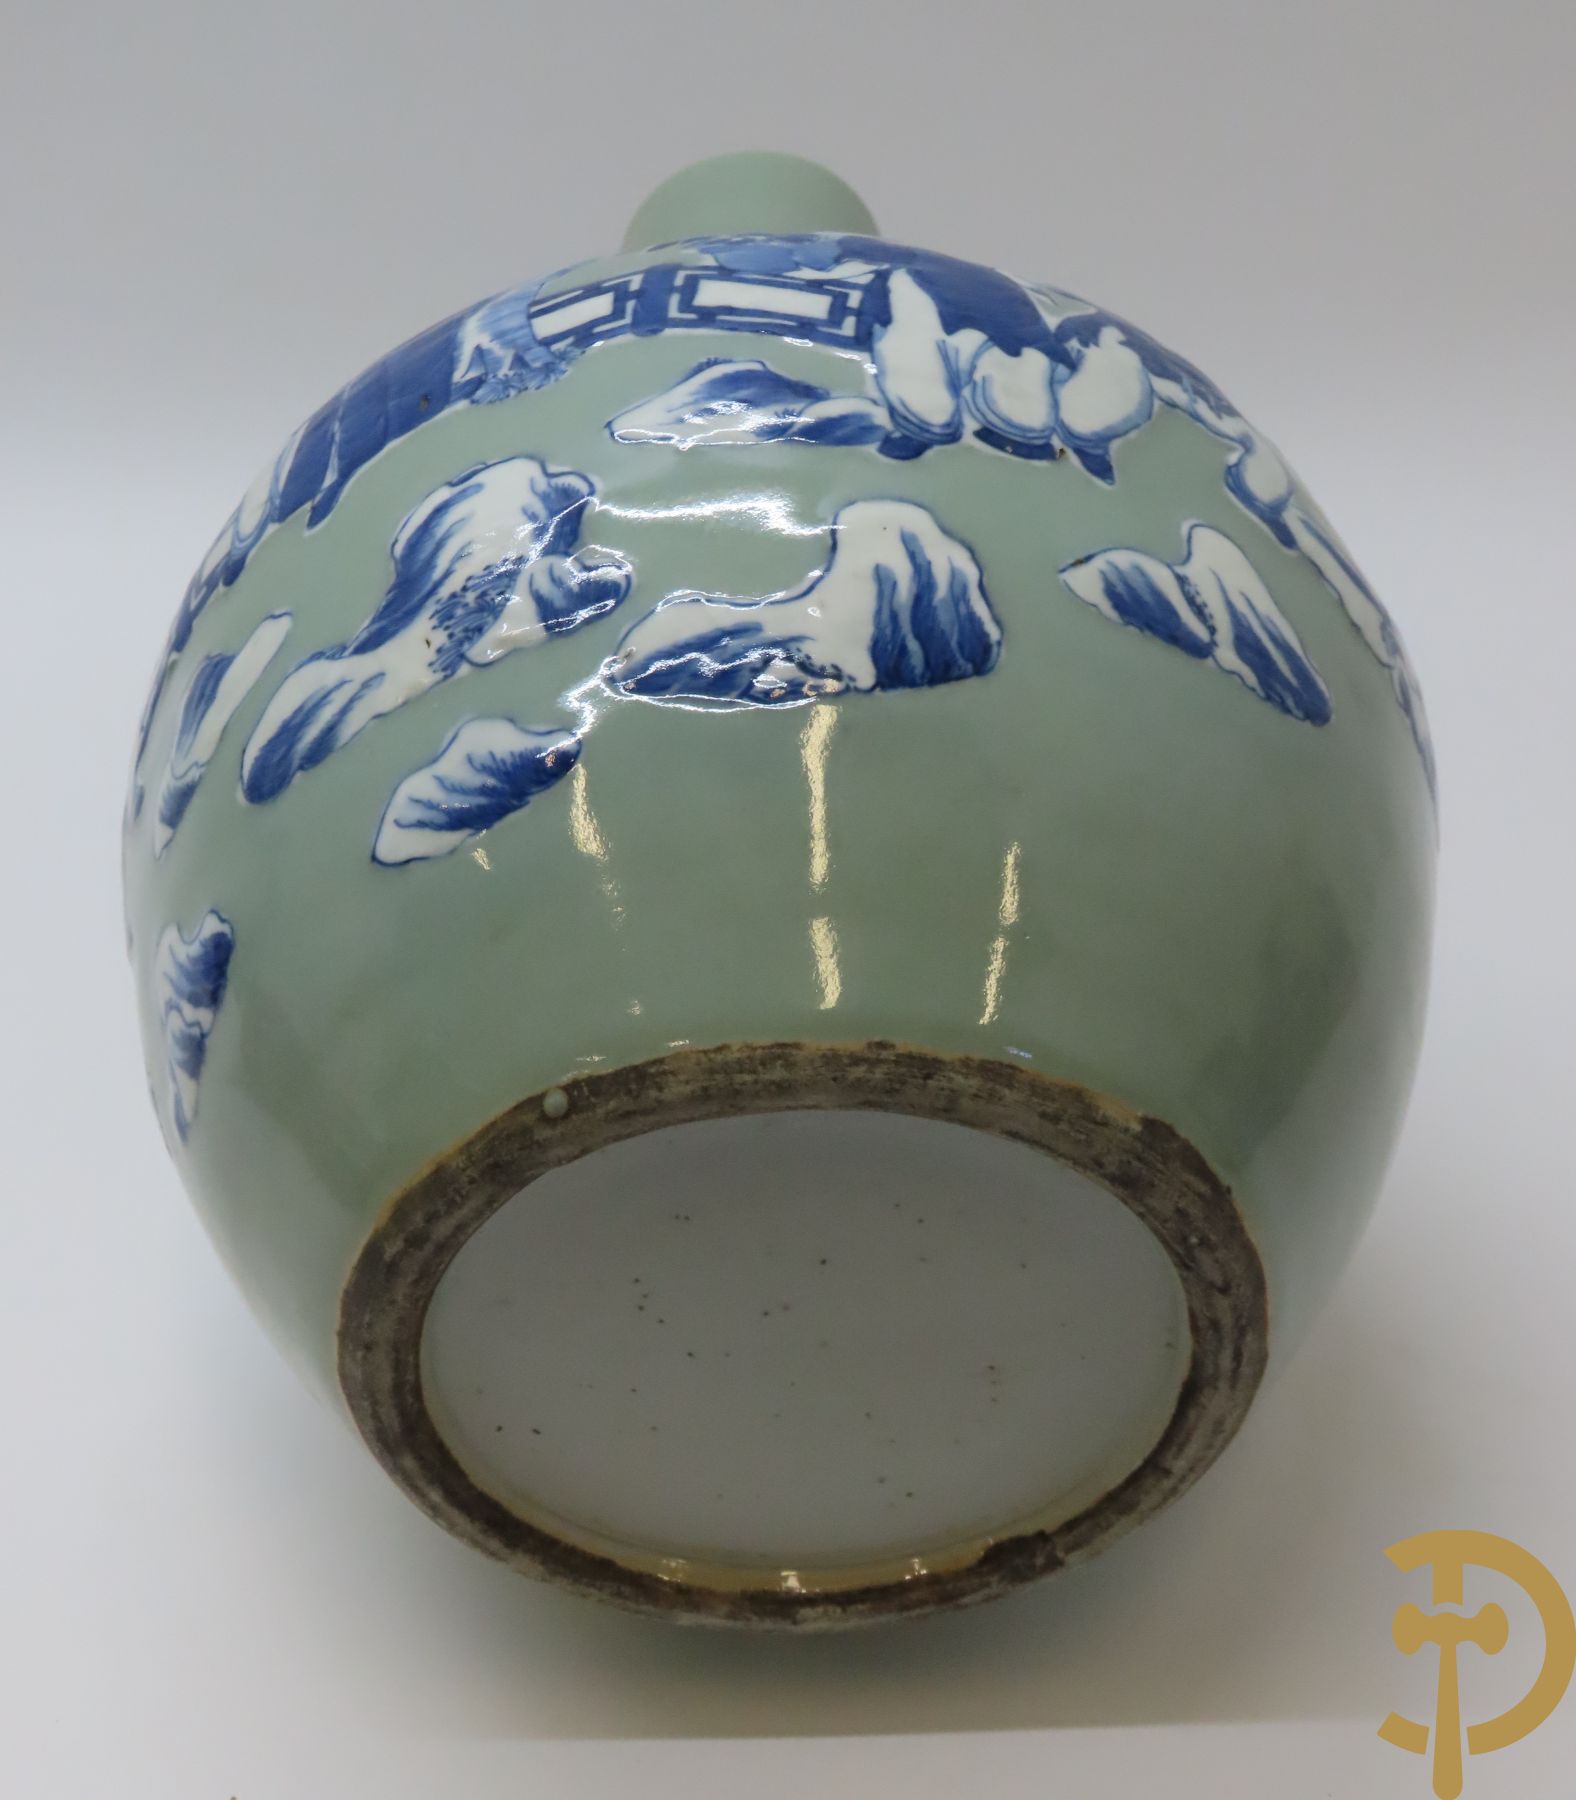 Kalebasvormige Chinese porseleinen celadonvaas met geanimeerd landschapsdecor